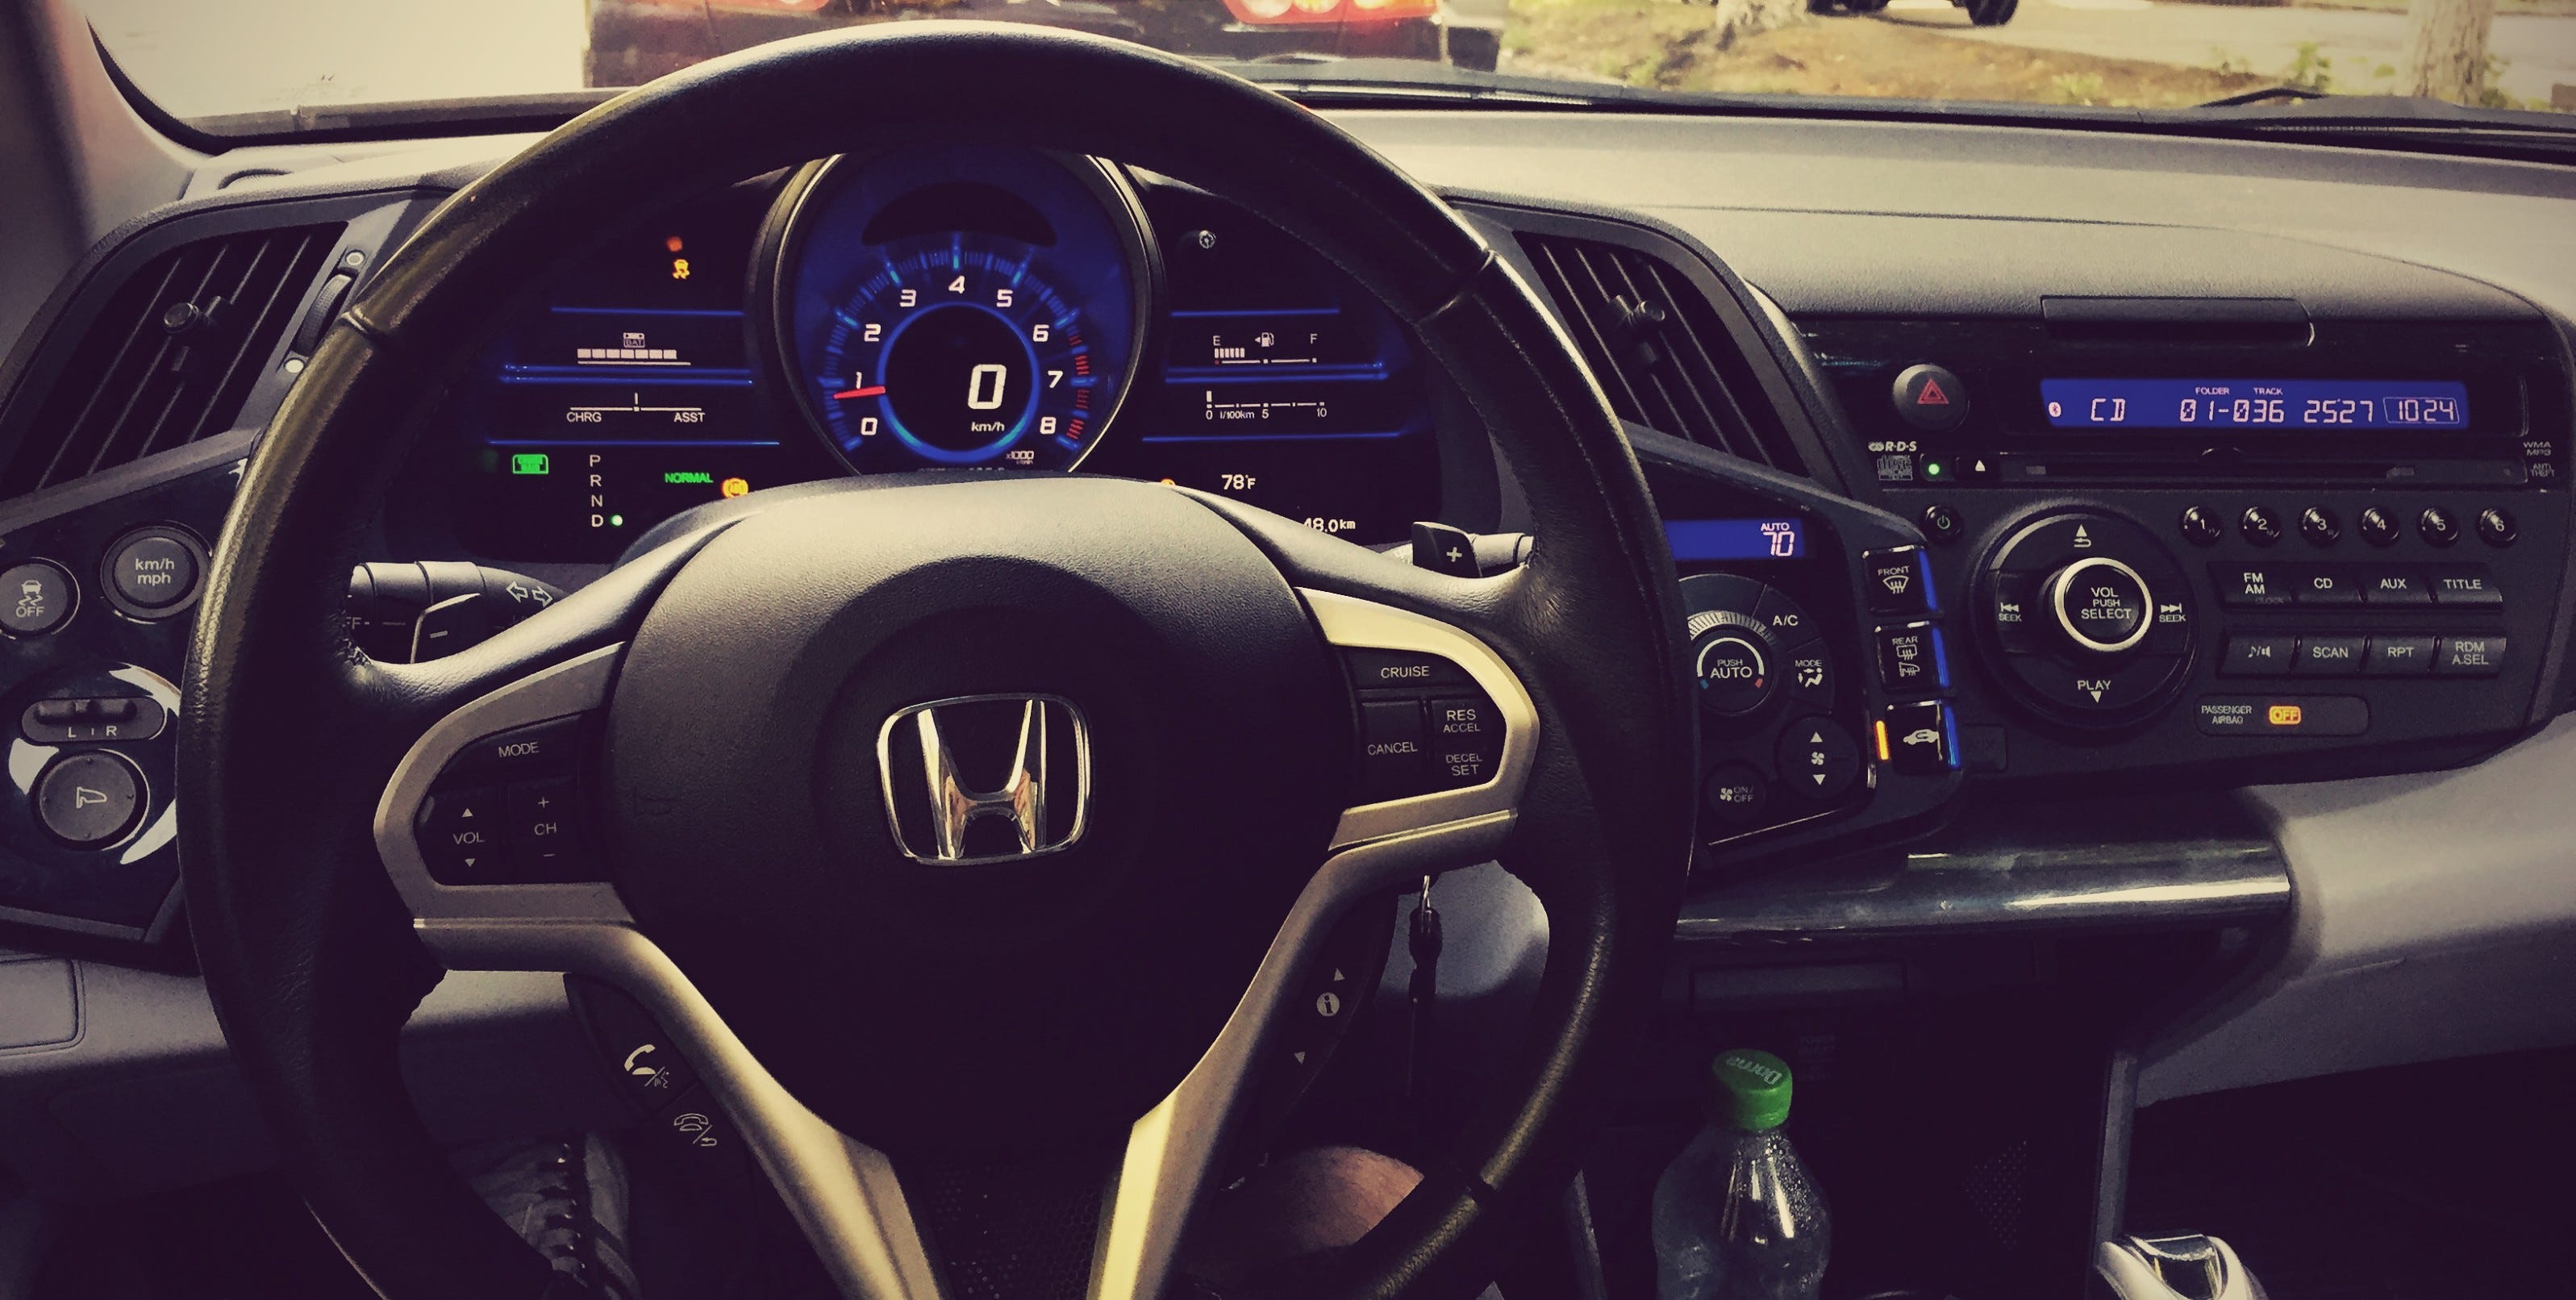 Steering Wheel Cover for Honda CR-Z CRZ